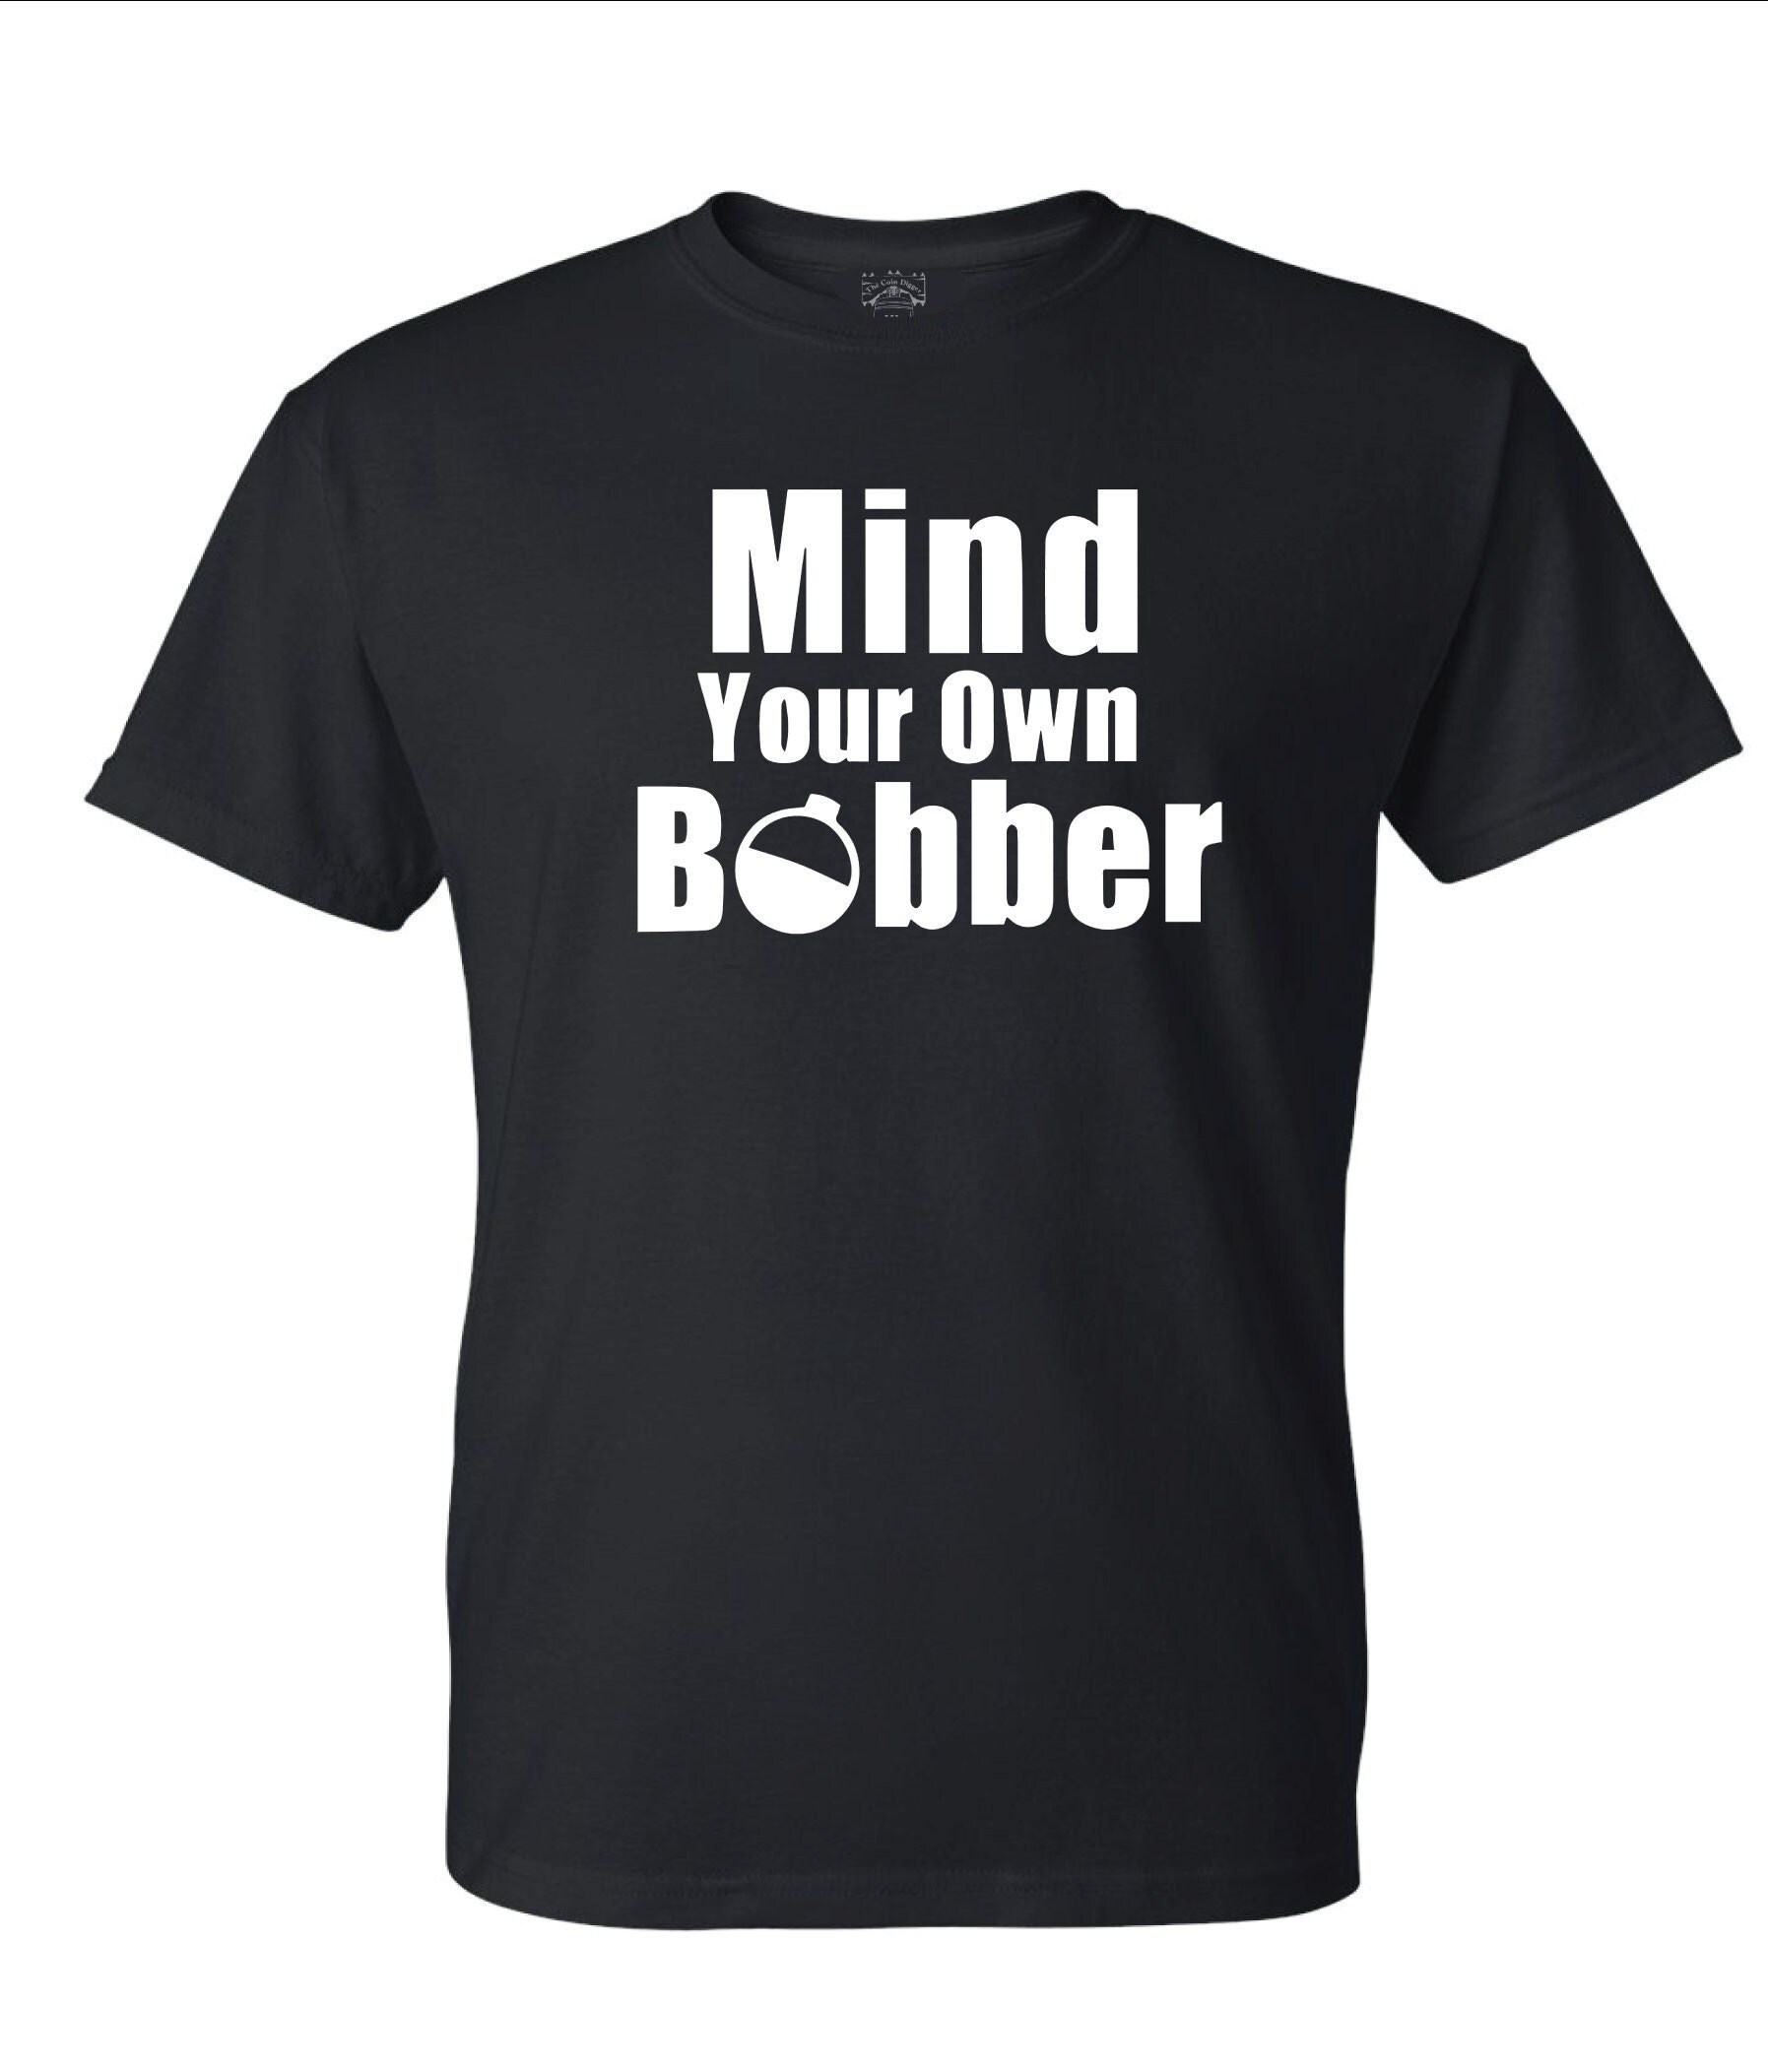 Mind Your Own Bobber: Black, Red, Navy, Grey, White White or Black Logo 